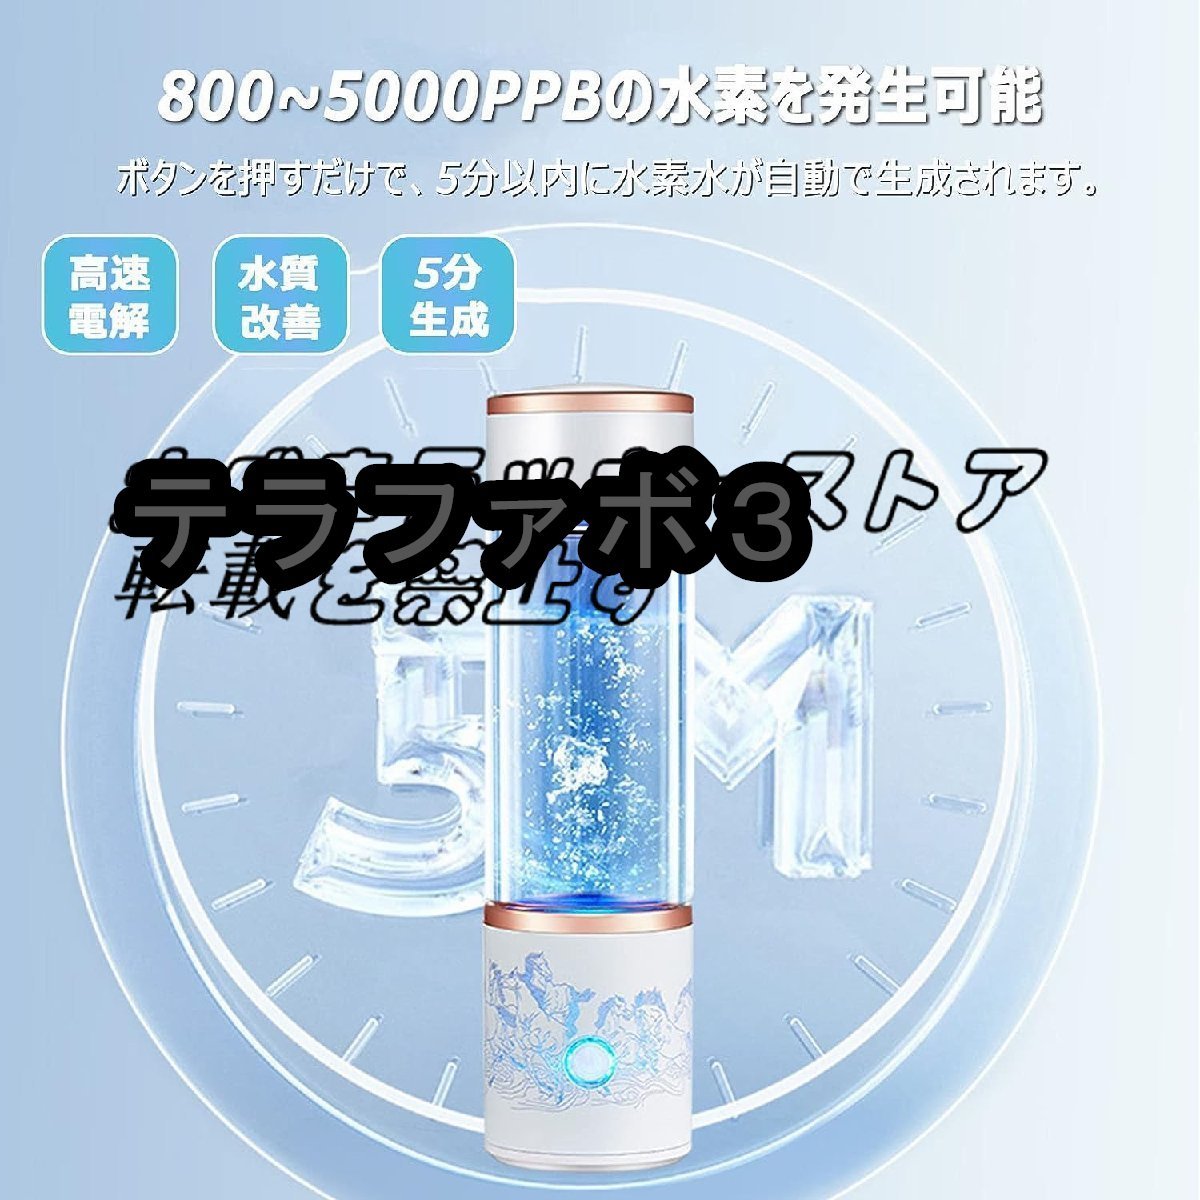 水素水生成器 超高濃度 水素水ボトル 5000PPB 一台三役 300ML 冷水/温水通用 ボトル式電解水機 飲める 美容 健康 携帯用_画像3